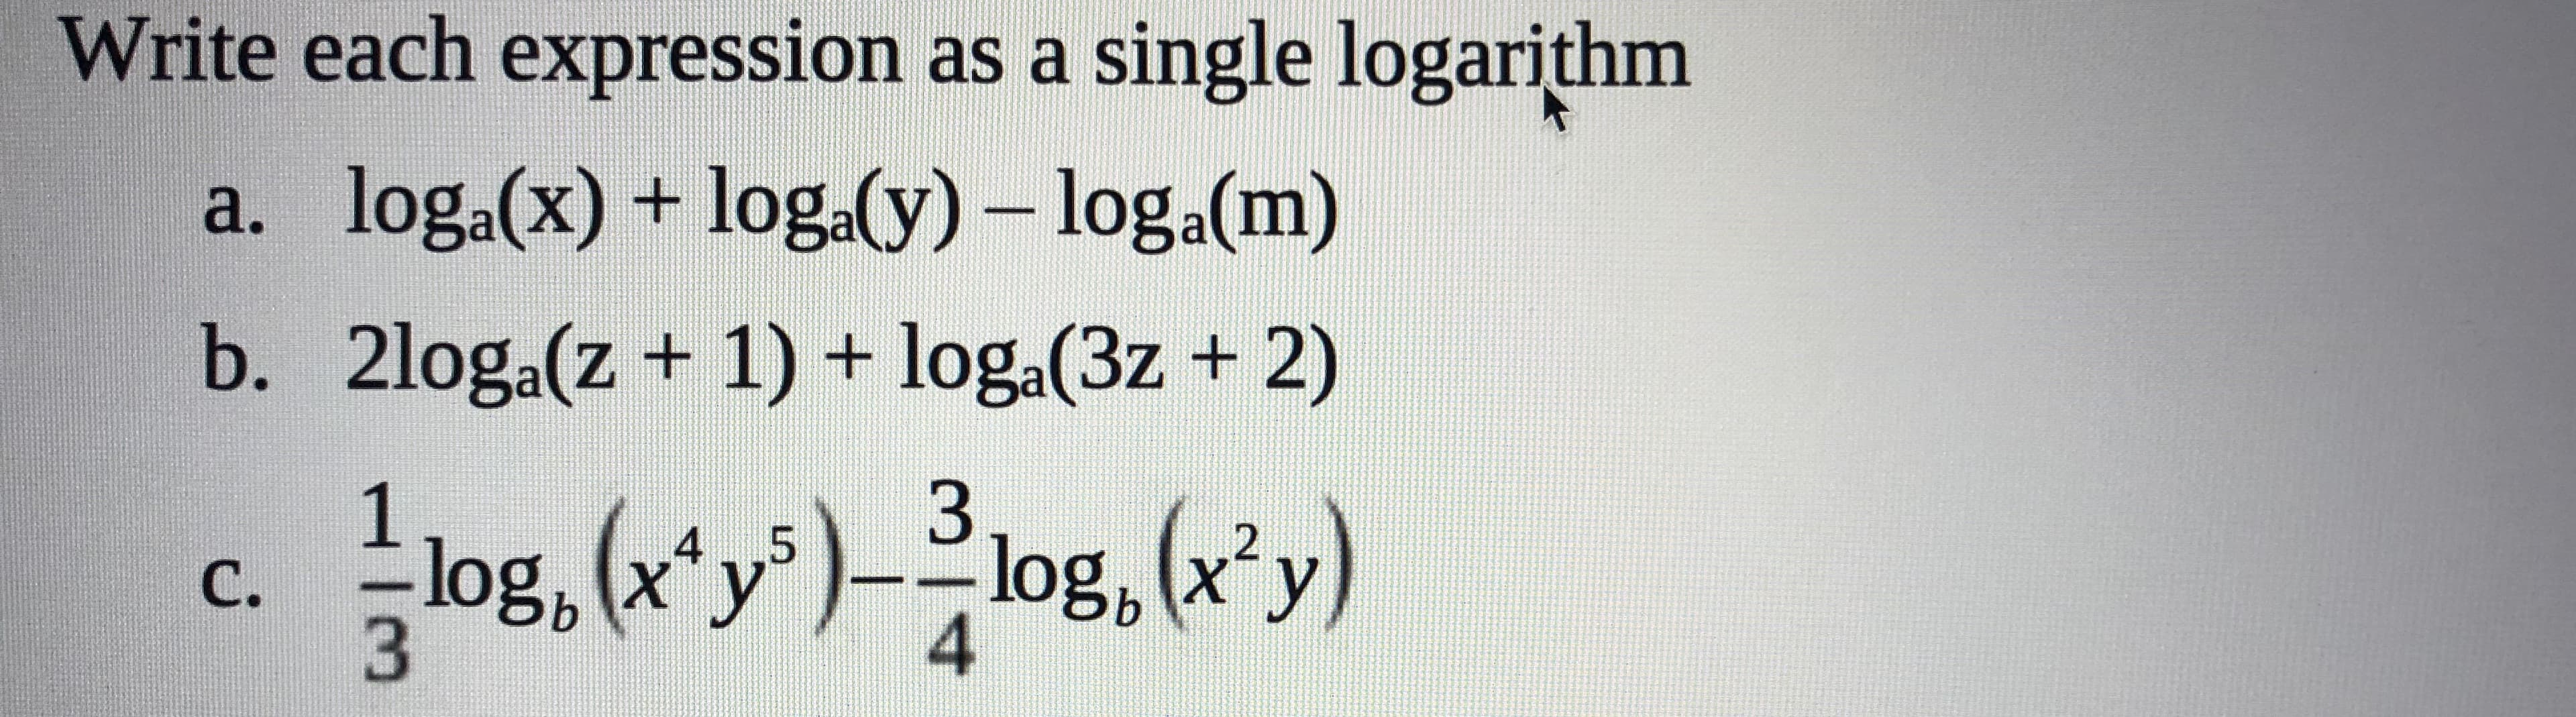 Write each expression as a single logarithm
a. loga(x) + loga(y)- log.a(m)
b. 2loga(z+ 1) + loga(3z + 2)
3
log, x y
log, (xy)log, (x'y)
4
C.
|03
